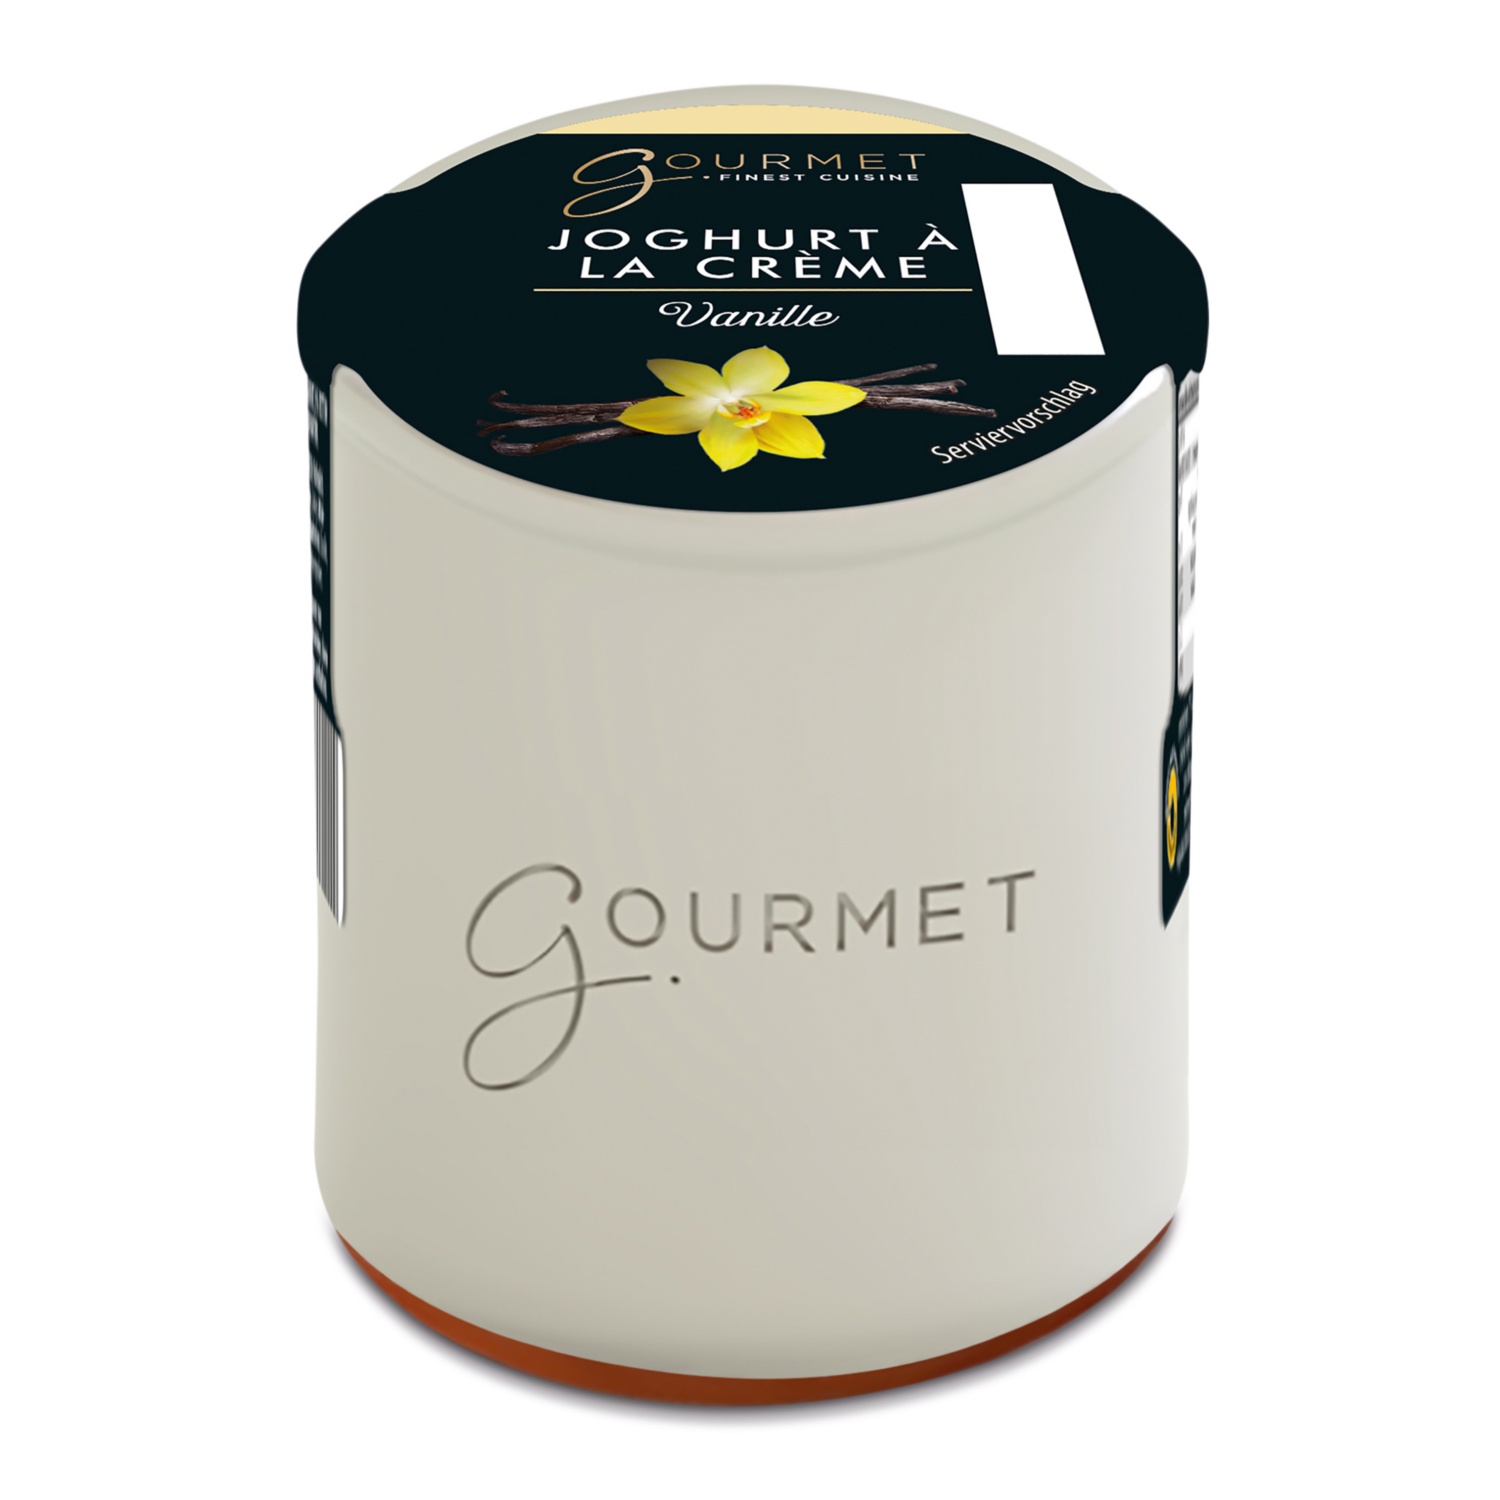 GOURMET FINEST CUISINE Joghurt à la creme, Vanille